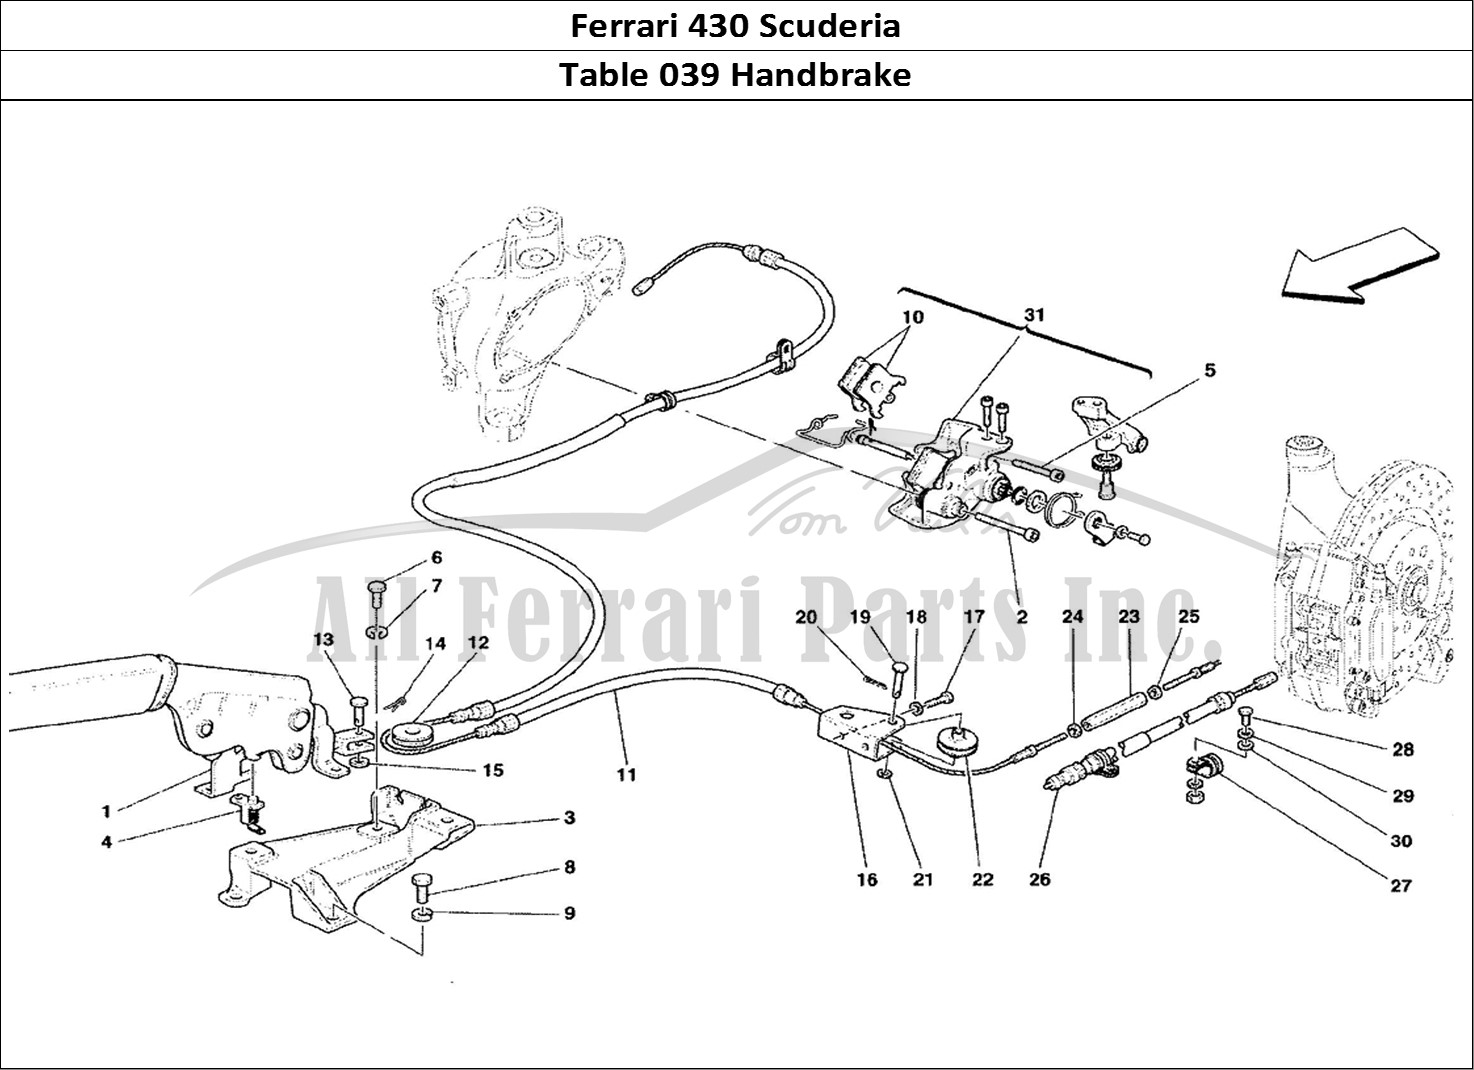 Ferrari Parts Ferrari 430 Scuderia Page 039 Hand-Brake Control